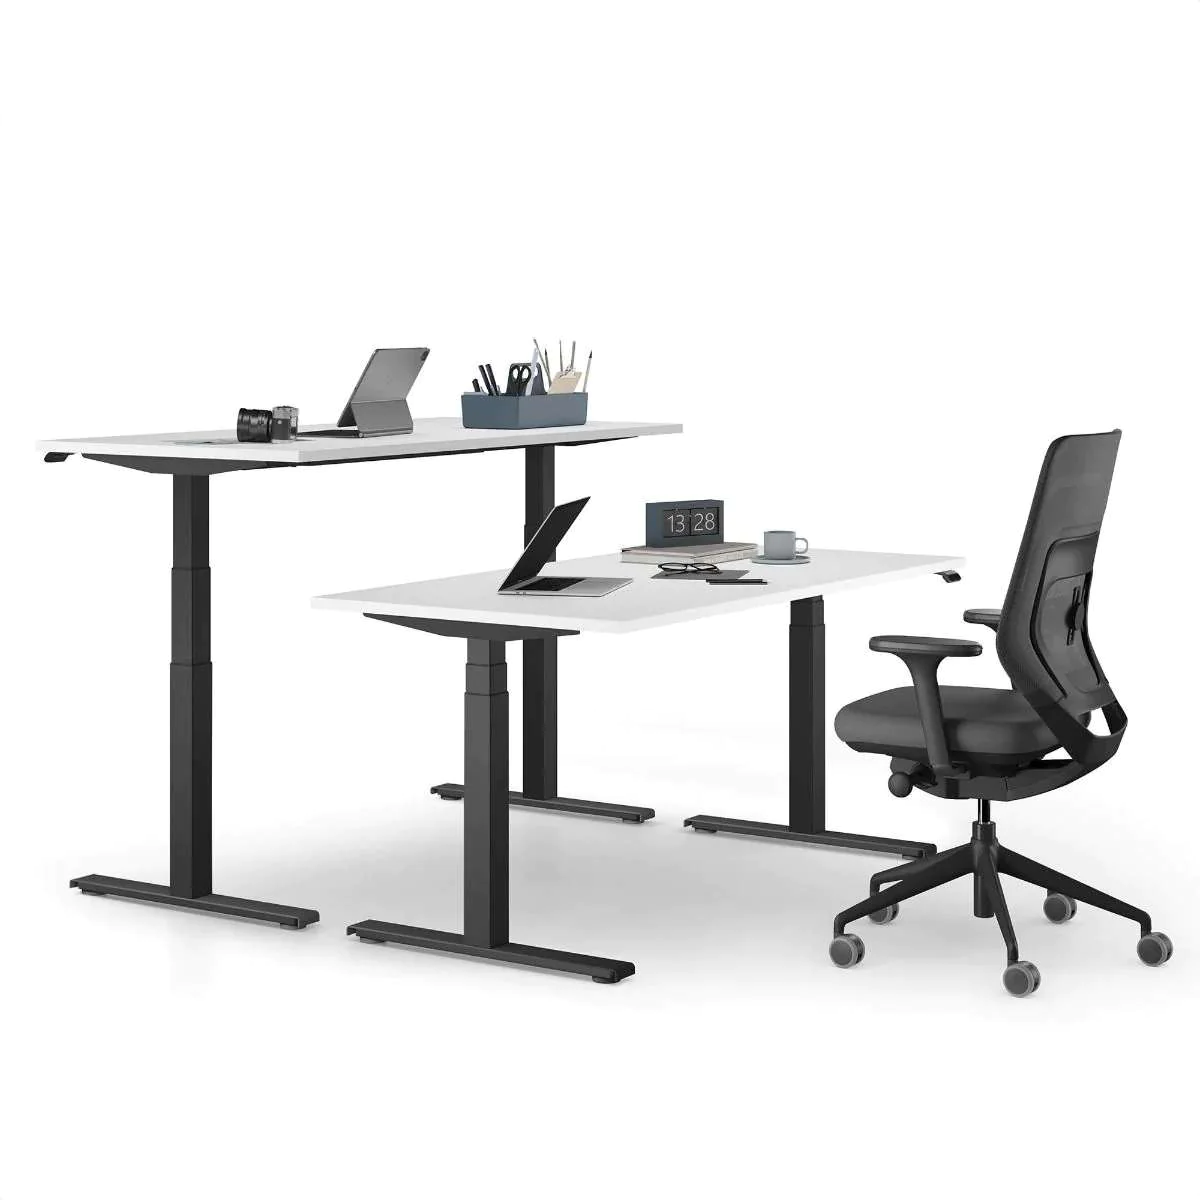 Höhenverstellbare Schreibtische - elektrisch, stabil & ergonomisch -  Steh-Sitz-Tisch kaufen